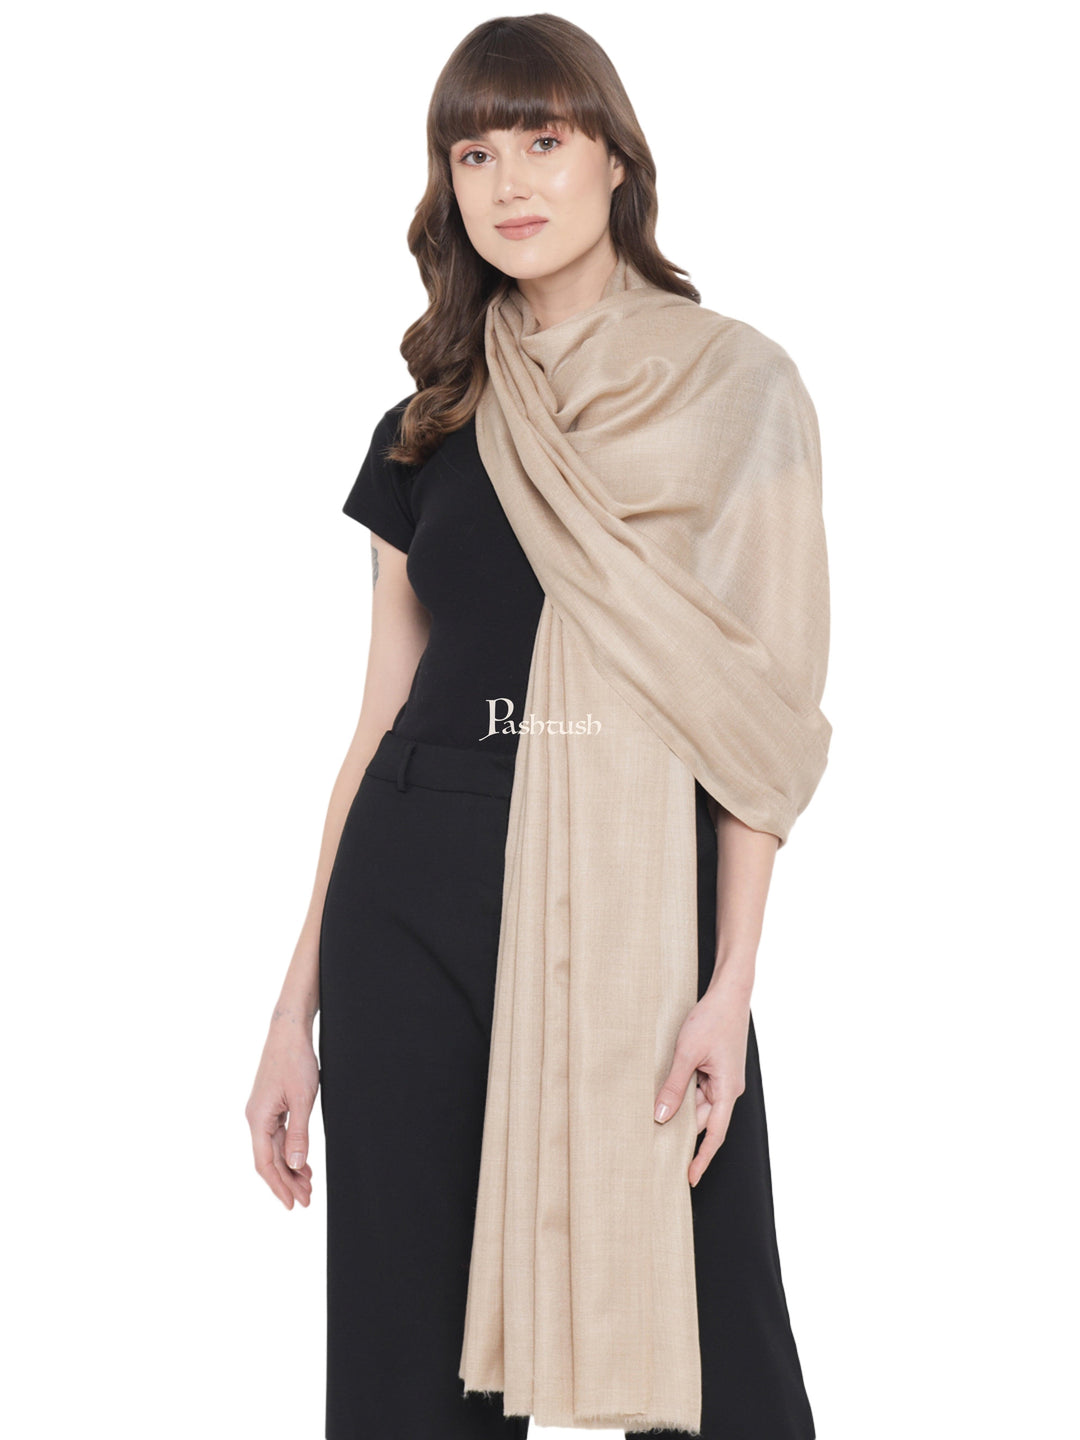 Pashtush India Womens Shawls Pashtush Womens Fine Wool Shawl, Basics, Extra Soft Warm Light Weight, Solid Beige